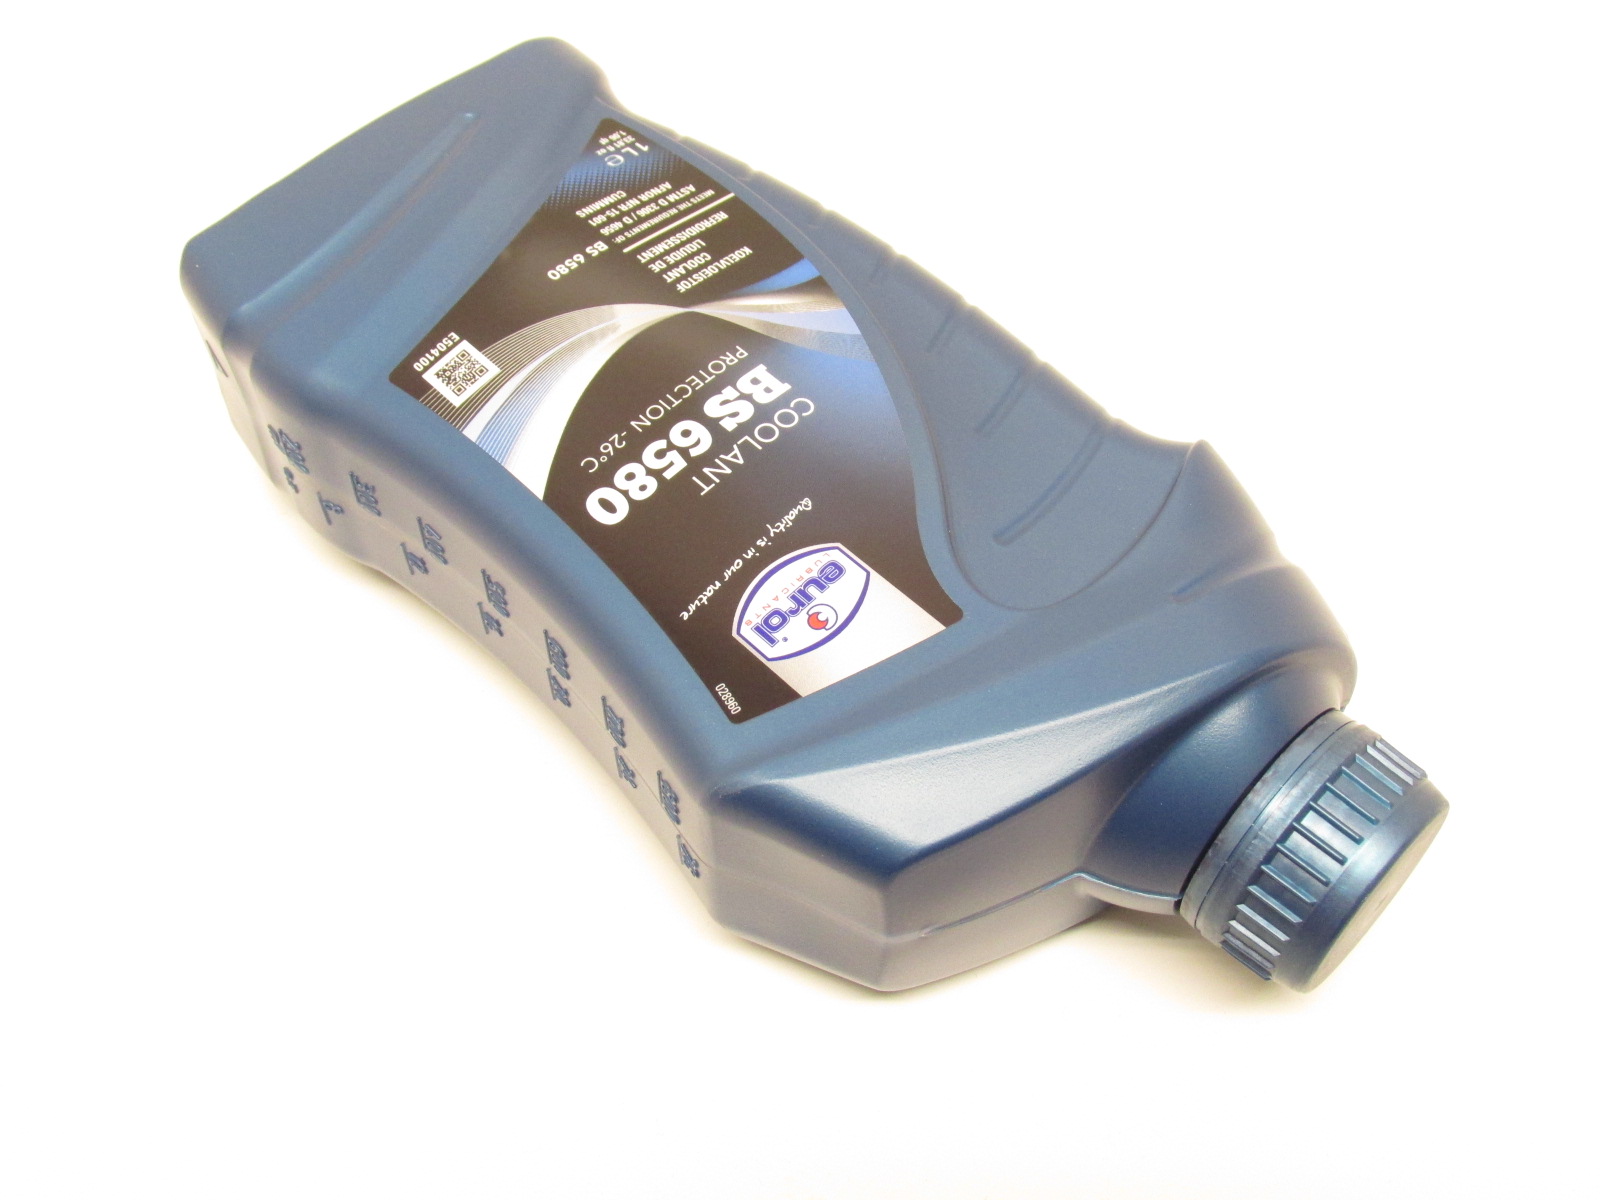 4x 1 Liter Kühlflüssigkeit Kühlmittel Kühler Frostschutz Blau für Roller  Motorrad, Flüssigkeiten, Zubehör